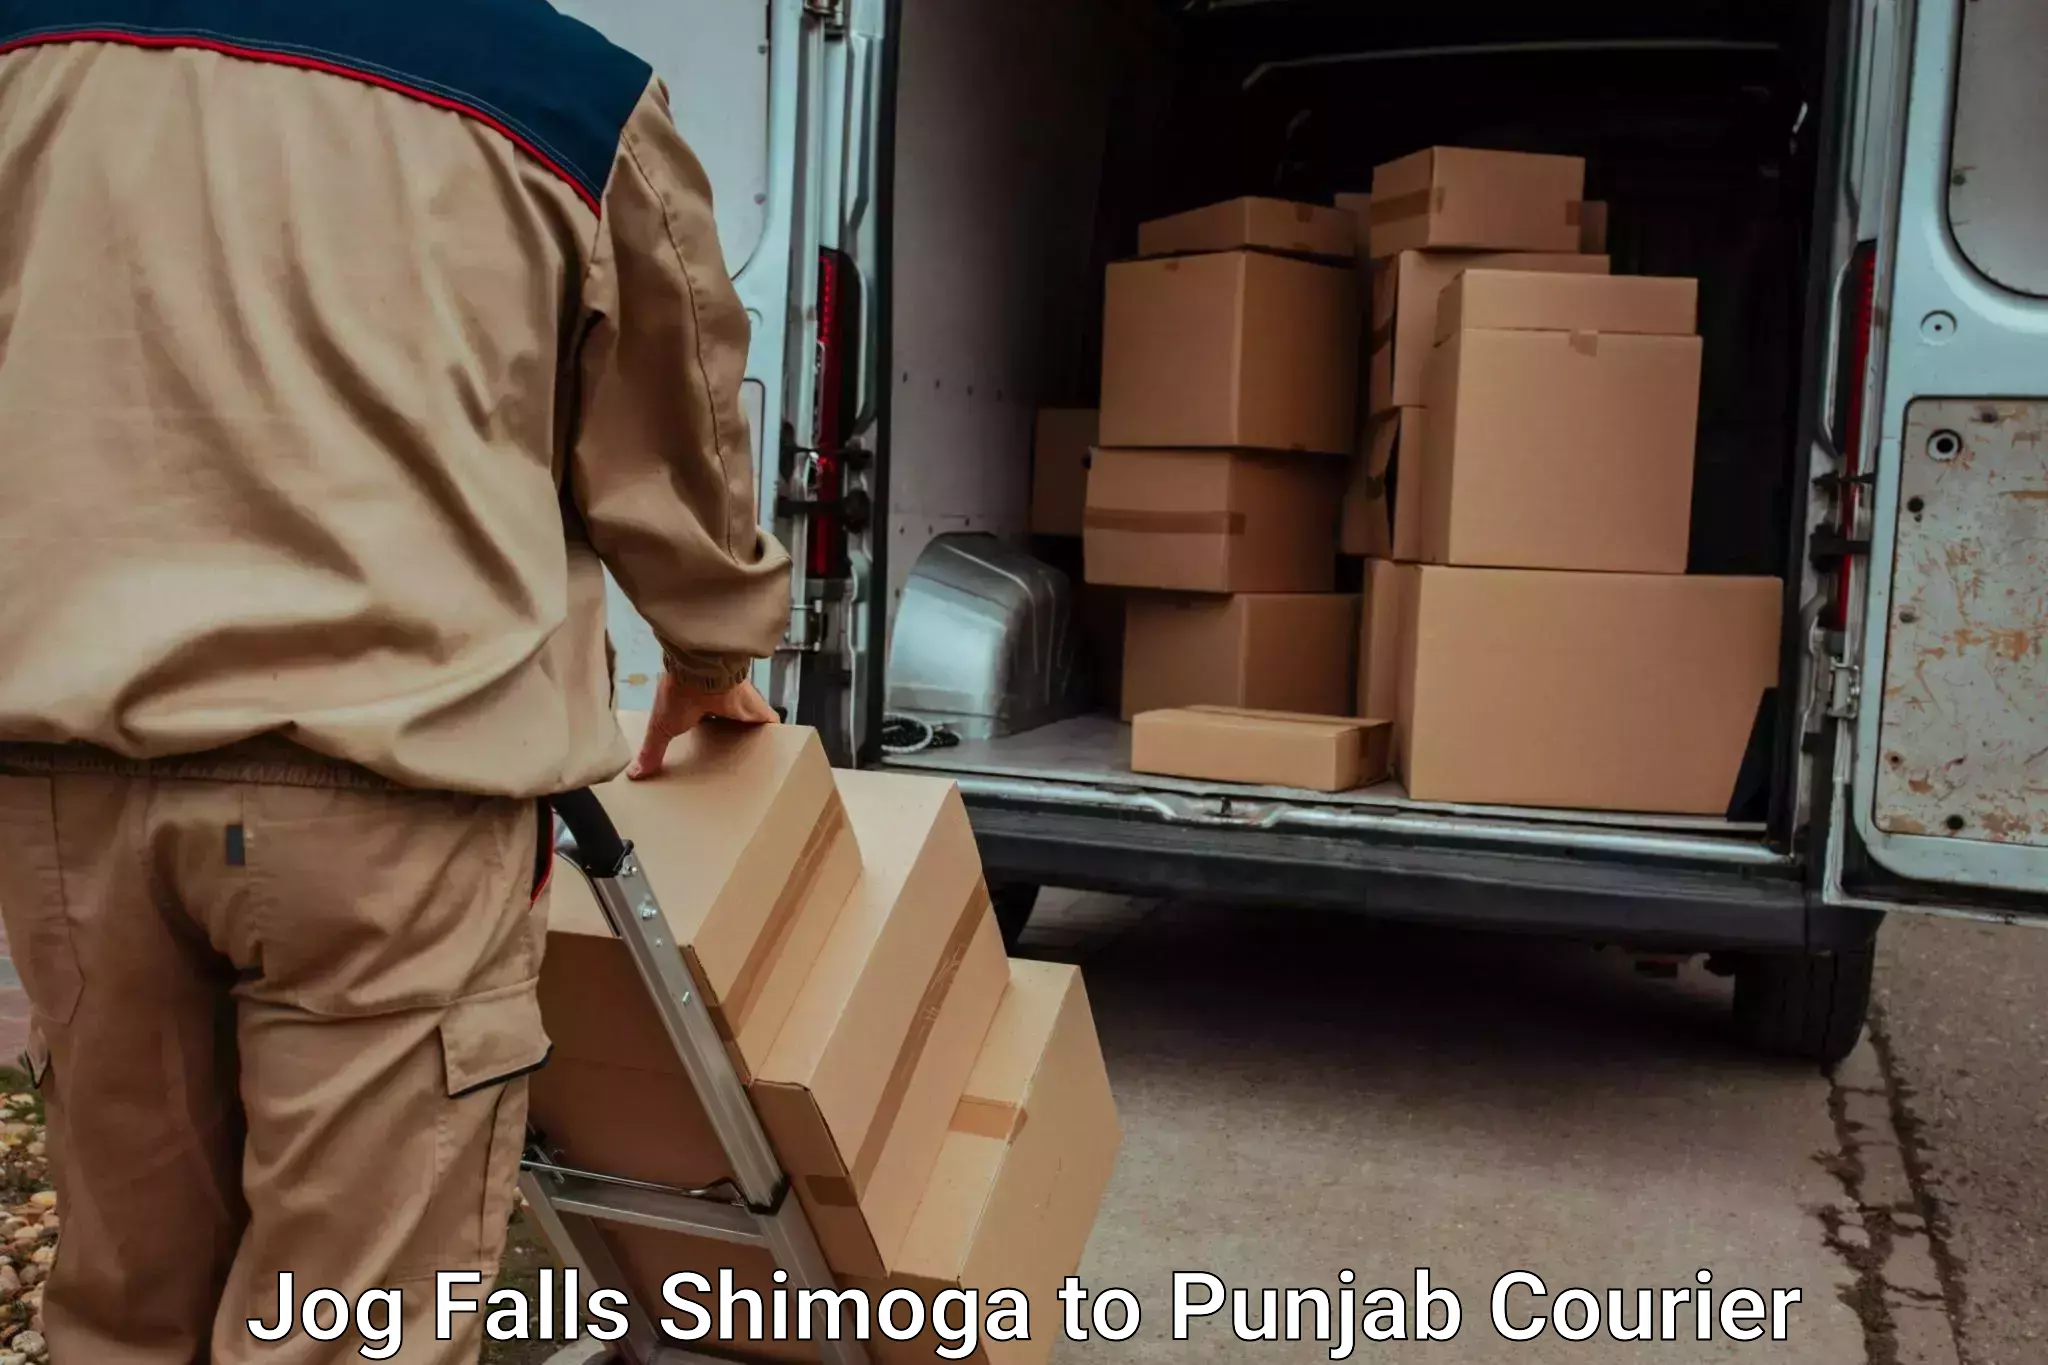 Luggage dispatch service in Jog Falls Shimoga to Punjab